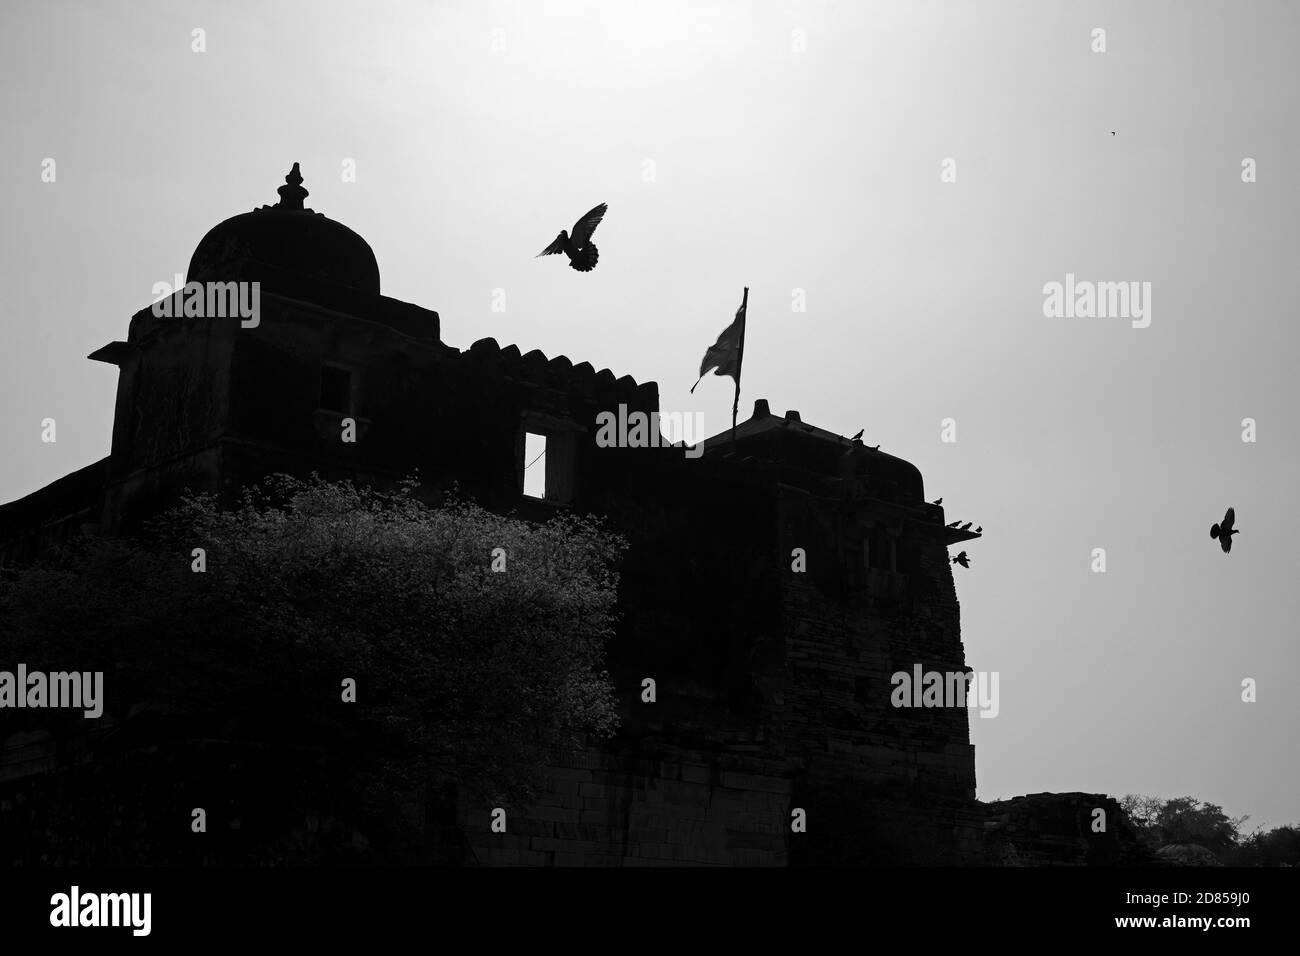 El fuerte de Chittor o Chittorgarh es el fuerte más grande de la India. Es Patrimonio de la Humanidad de la UNESCO, Chittorgarh, Rajasthan, India. Foto de stock